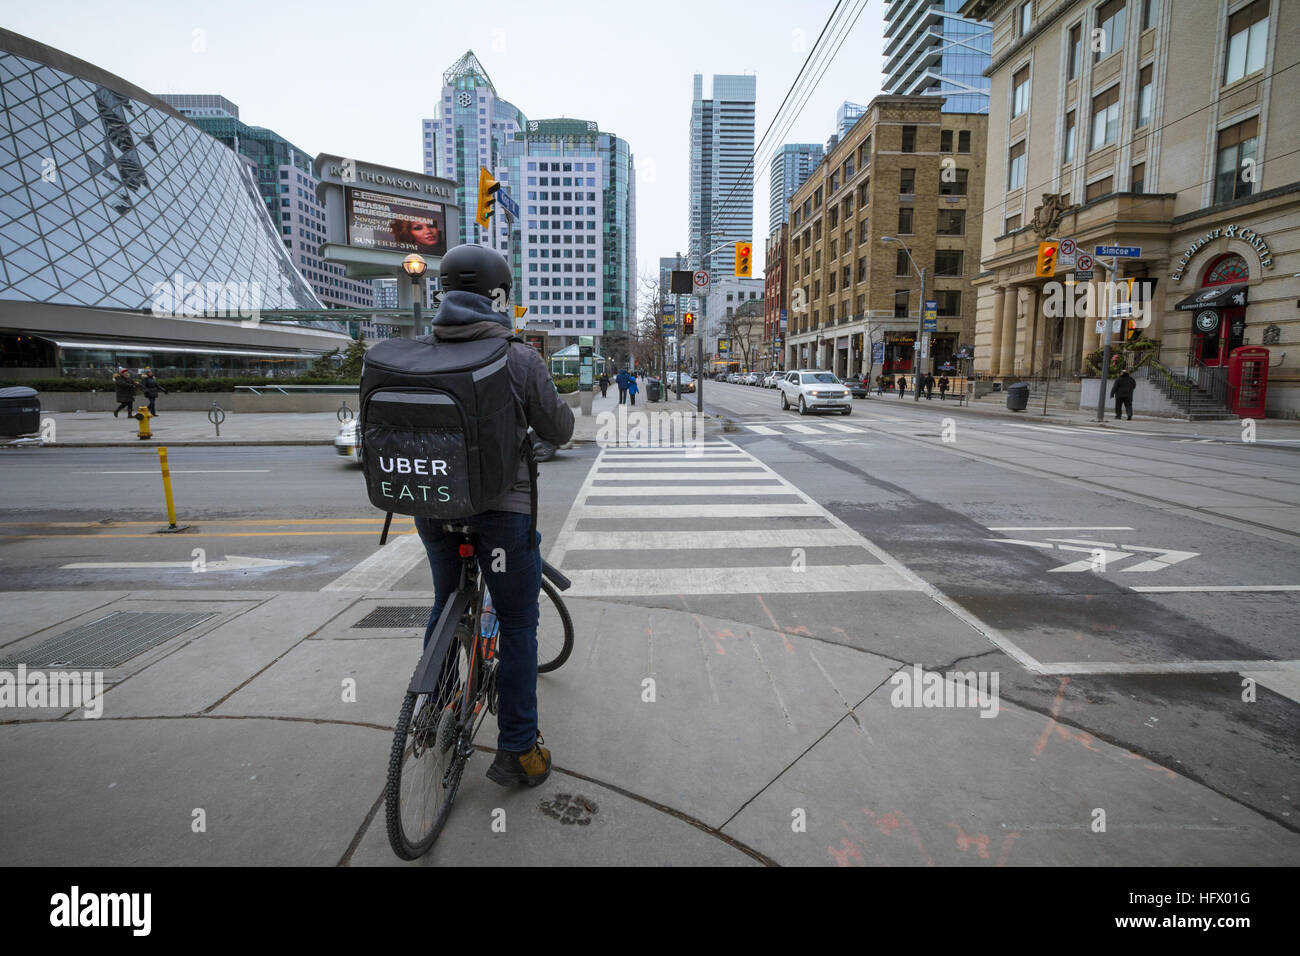 TORONTO, Canadá - 31 de diciembre de 2016: Uber come hombre entrega sobre una bicicleta esperando para cruzar una calle Foto de stock